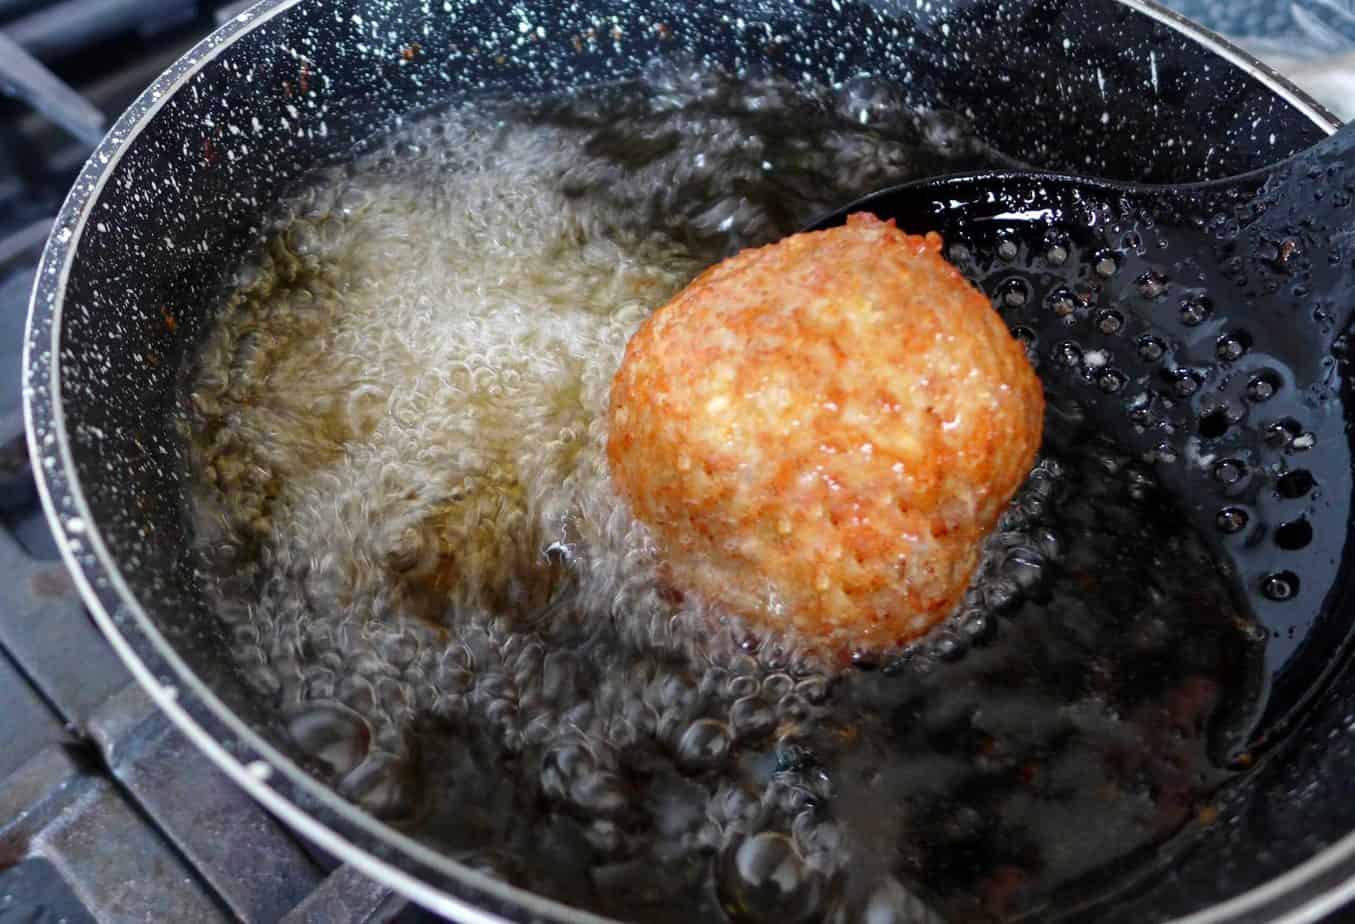 Deep frying a meatball